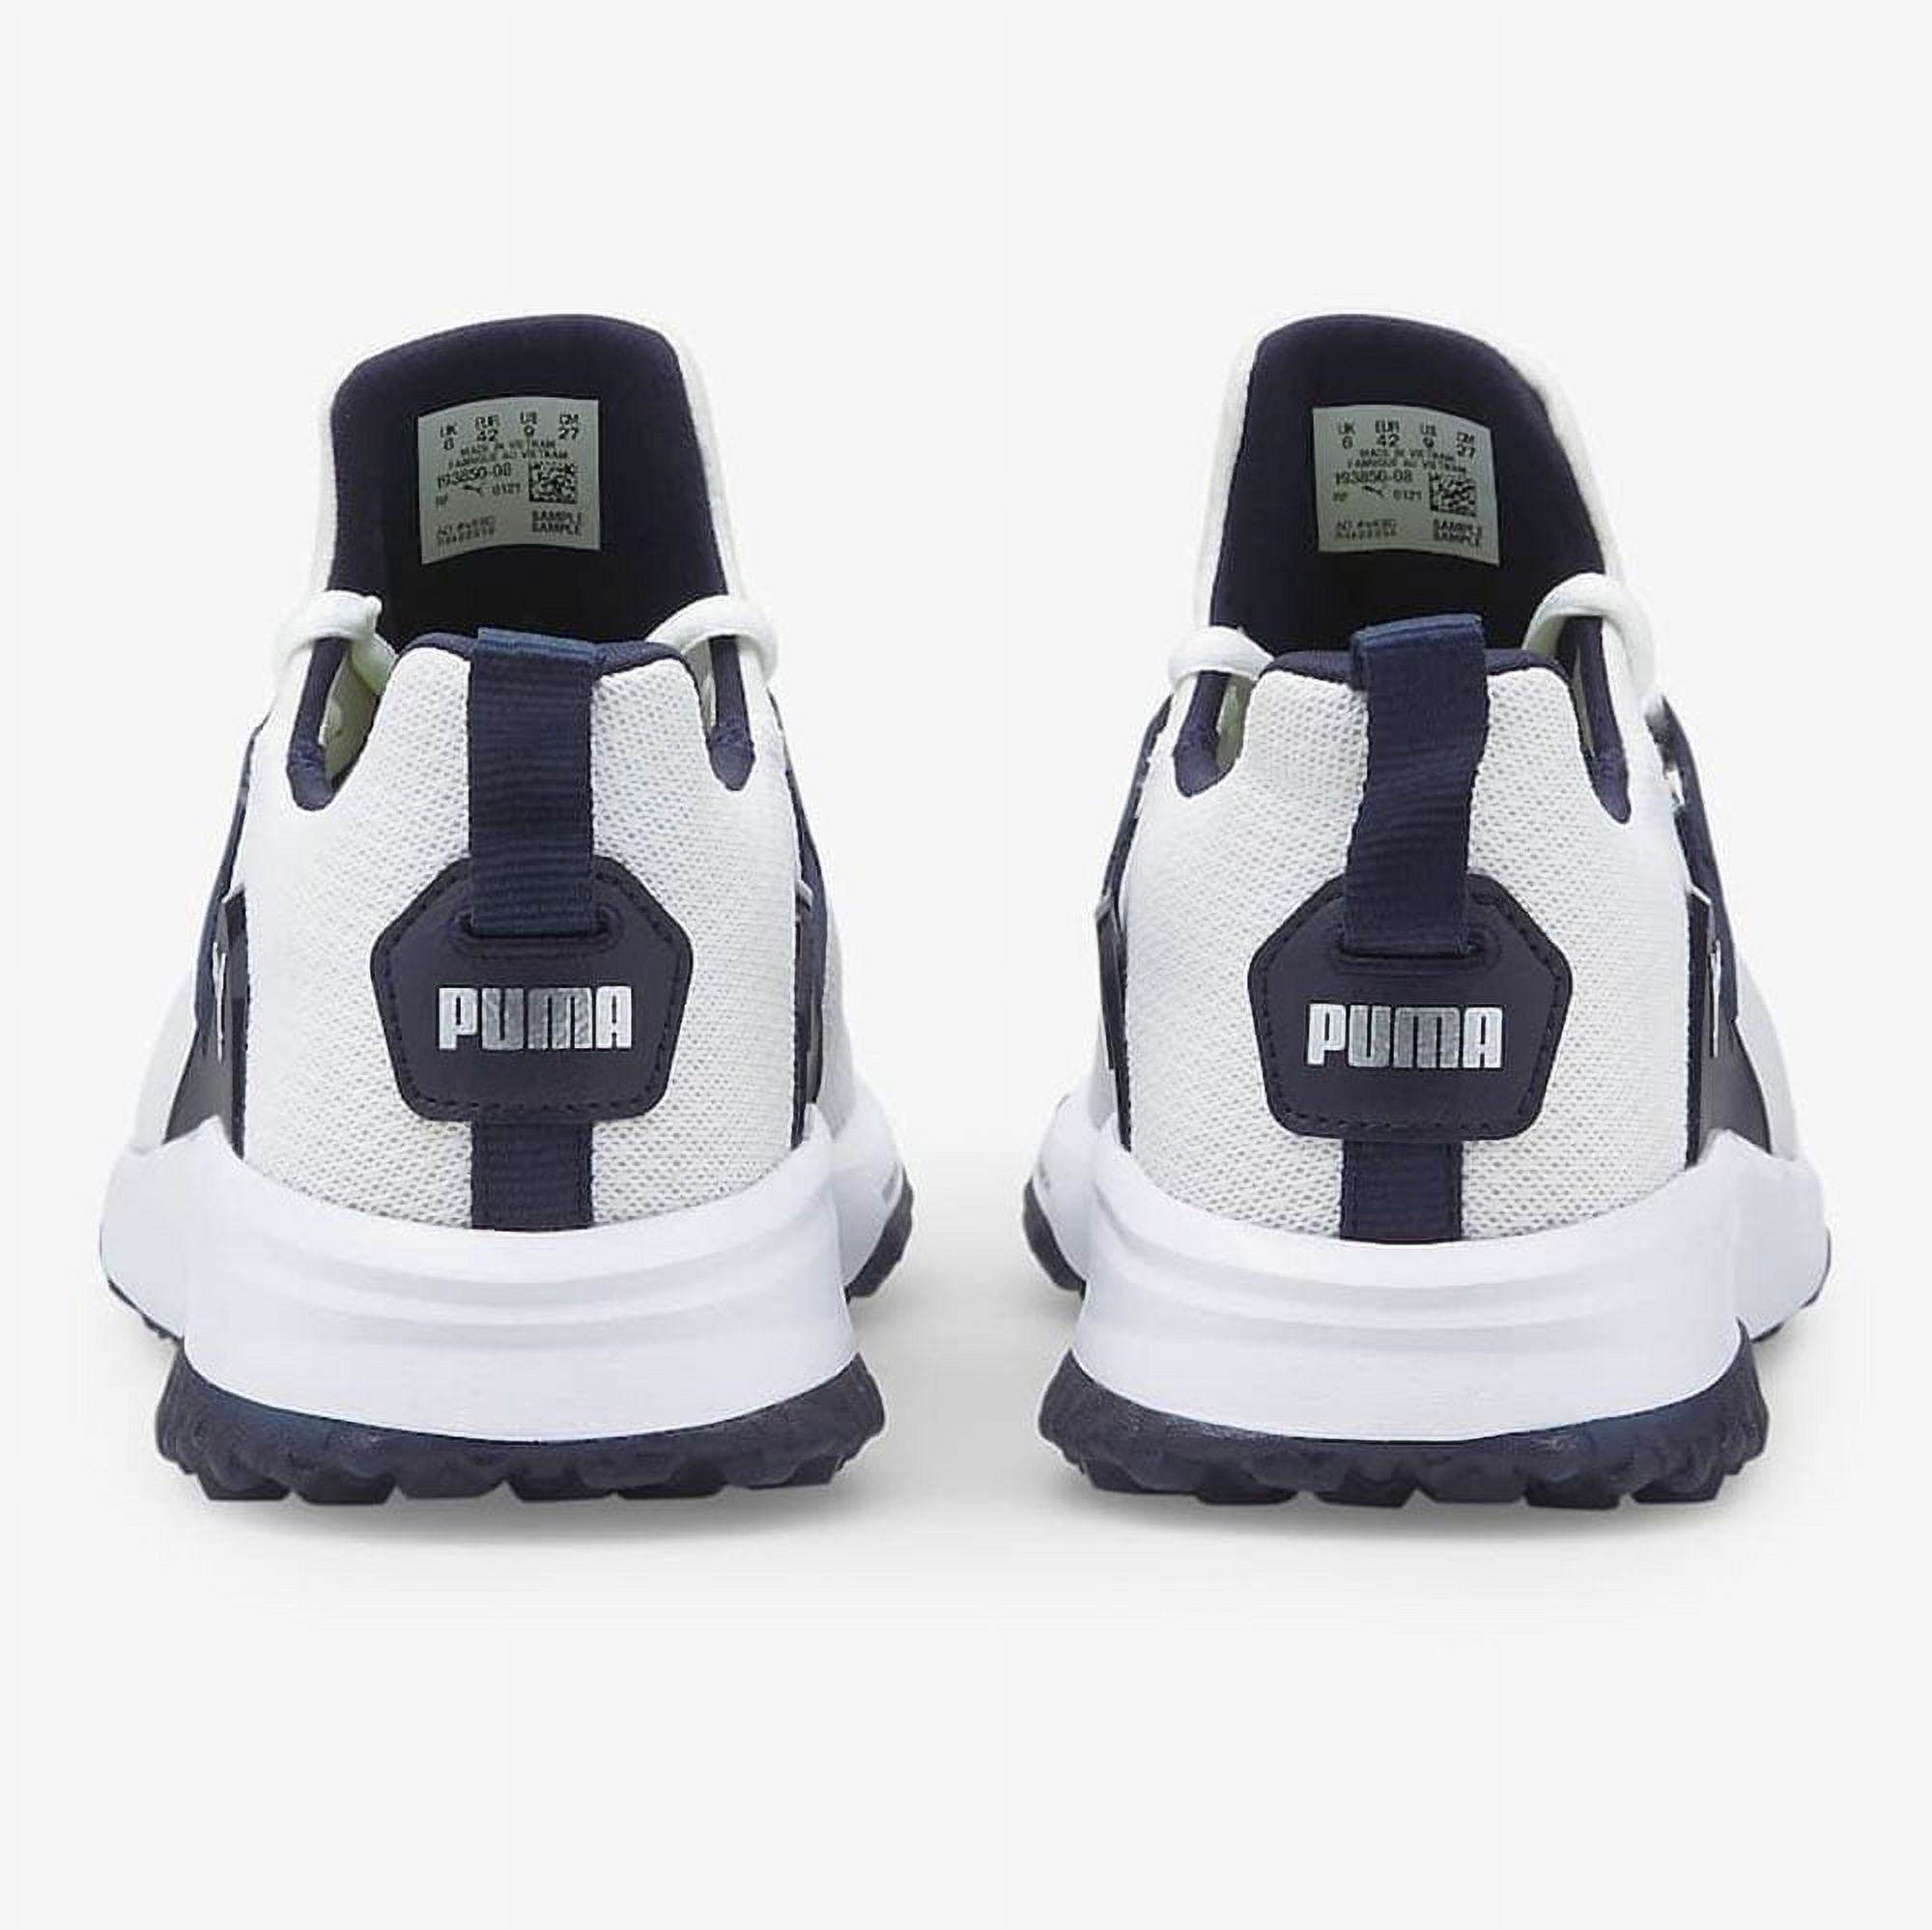 NEW Men's Puma Fusion Evo Spikeless Golf Shoes Puma White / Navy Blazer 9.5 M - image 3 of 3